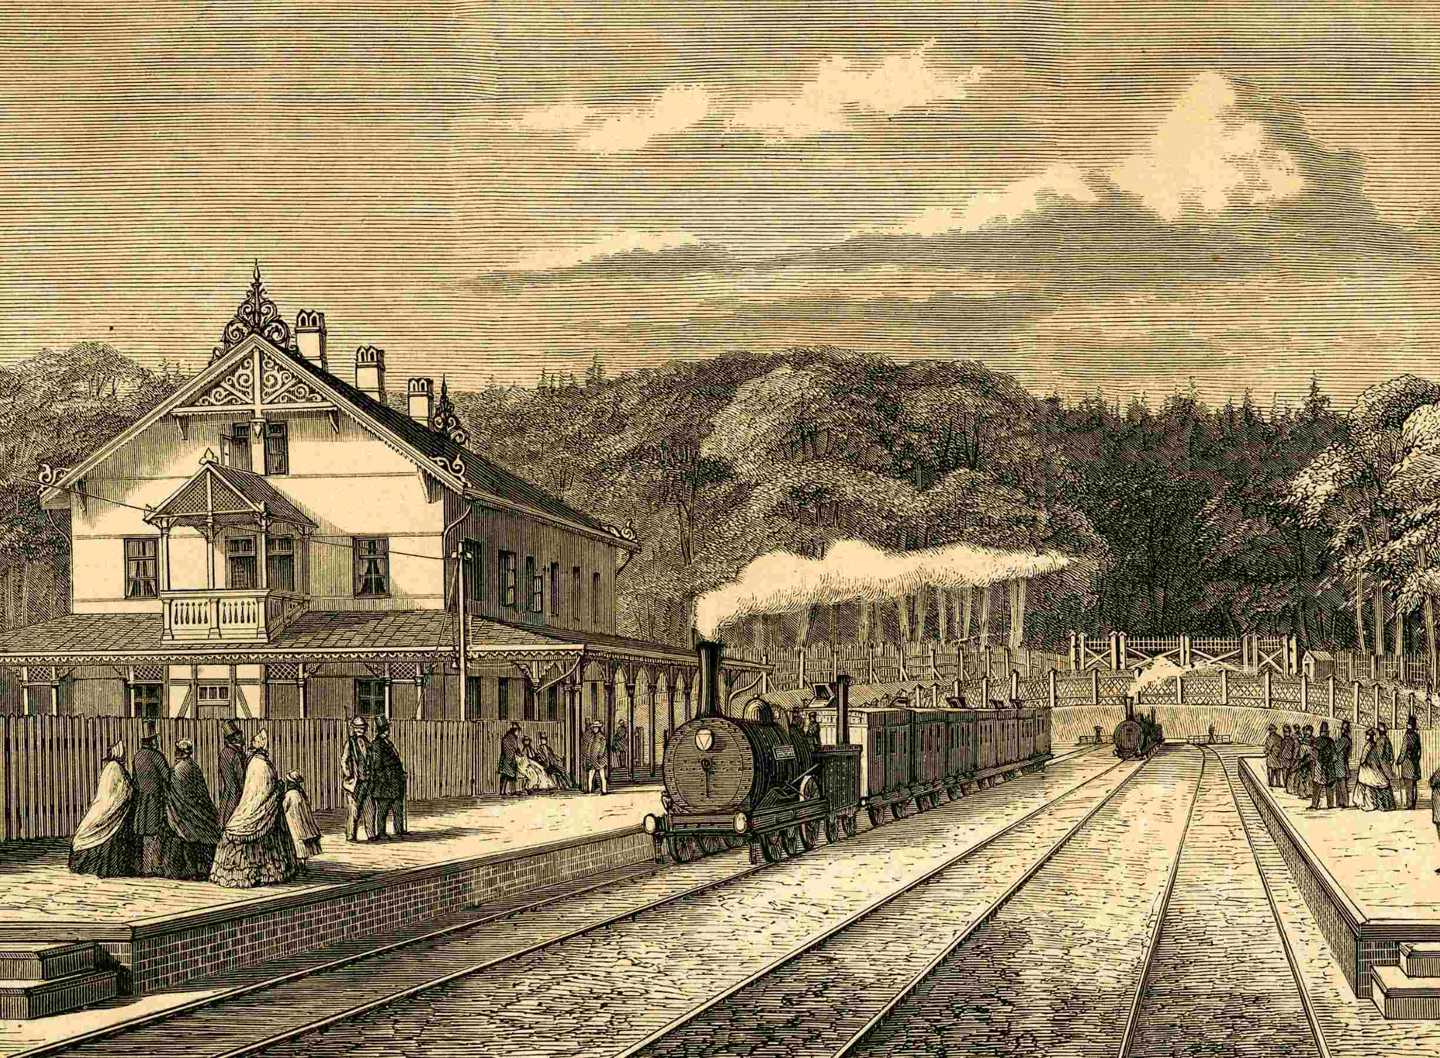 Tegning af den oprindelige station i Klampenborg. Ved perronen holder et damptog med 6 vogne. Passagererne på perronen bærer store kjoler, kyser og høje hatte.